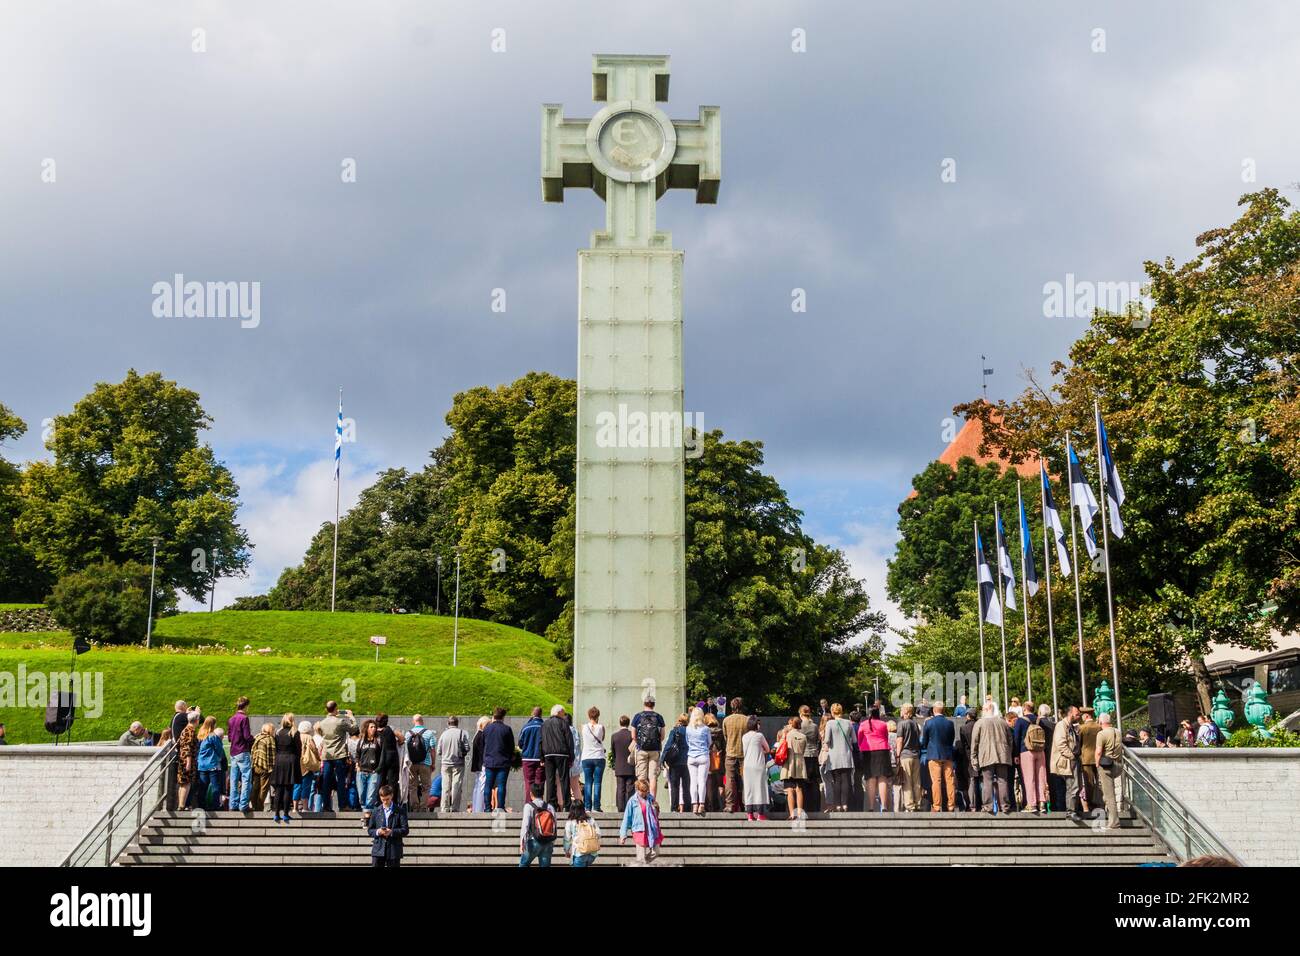 TALLINN, ESTONIA - AUGUST 23, 2016: War of Independence Victory Column in Tallinn, Estonia Stock Photo